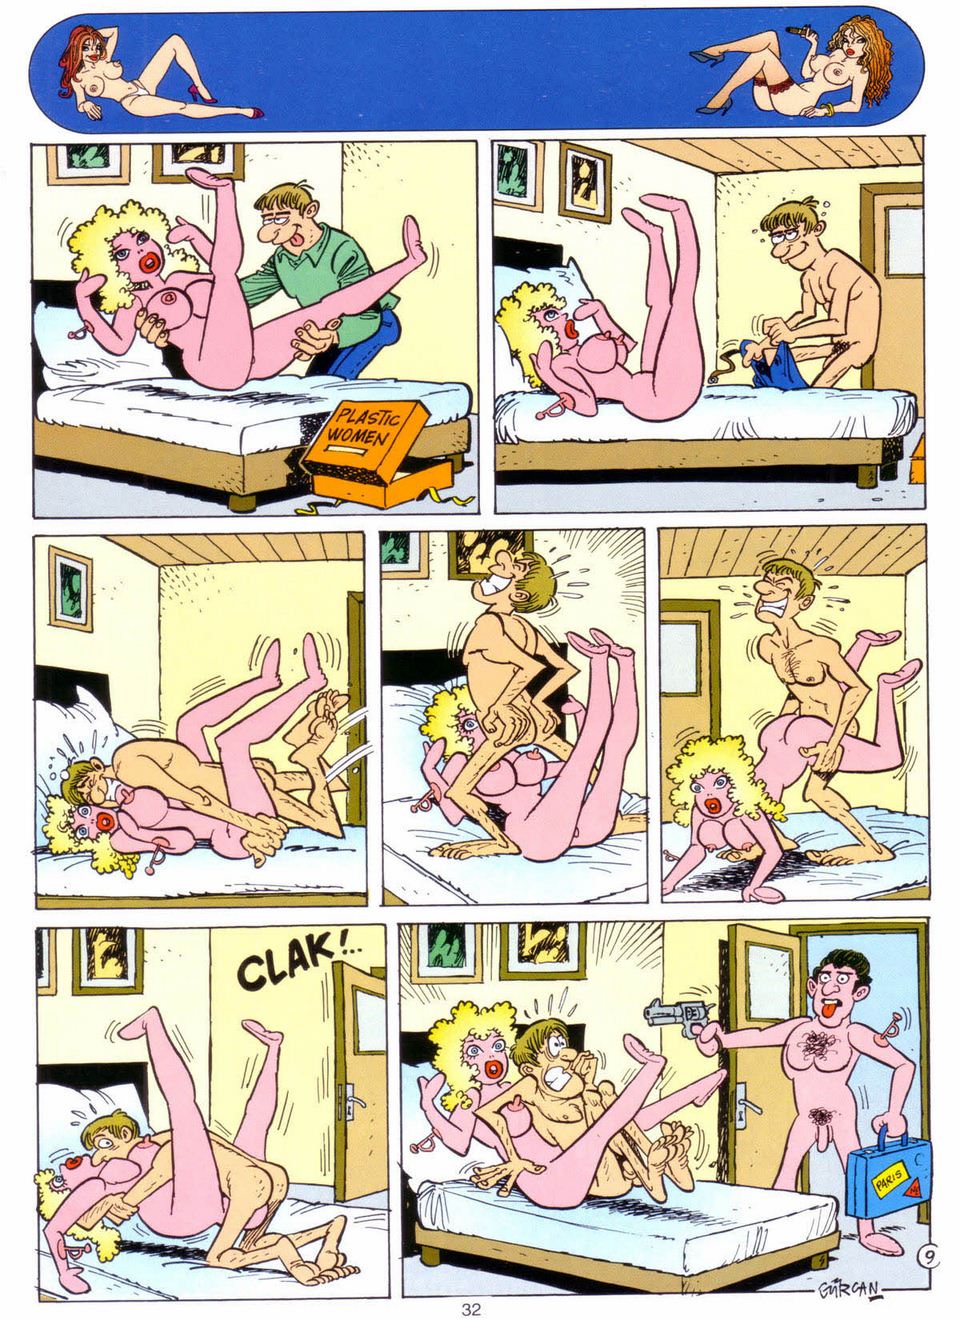 Porn Comics. 